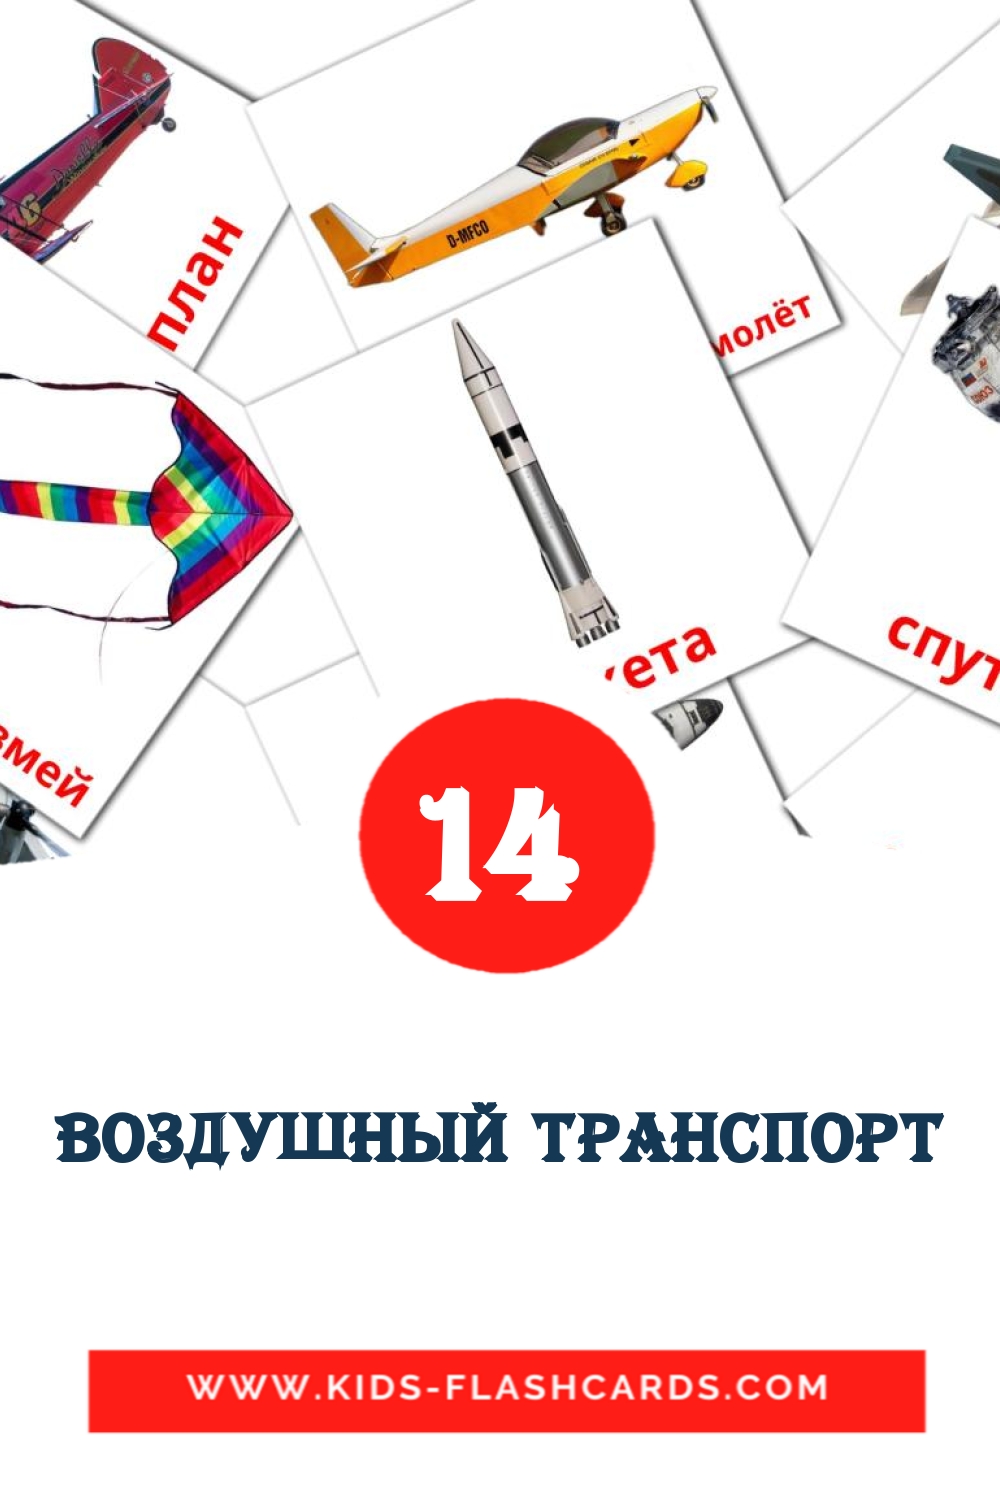 14 Воздушный транспорт Bildkarten für den Kindergarten auf Russisch